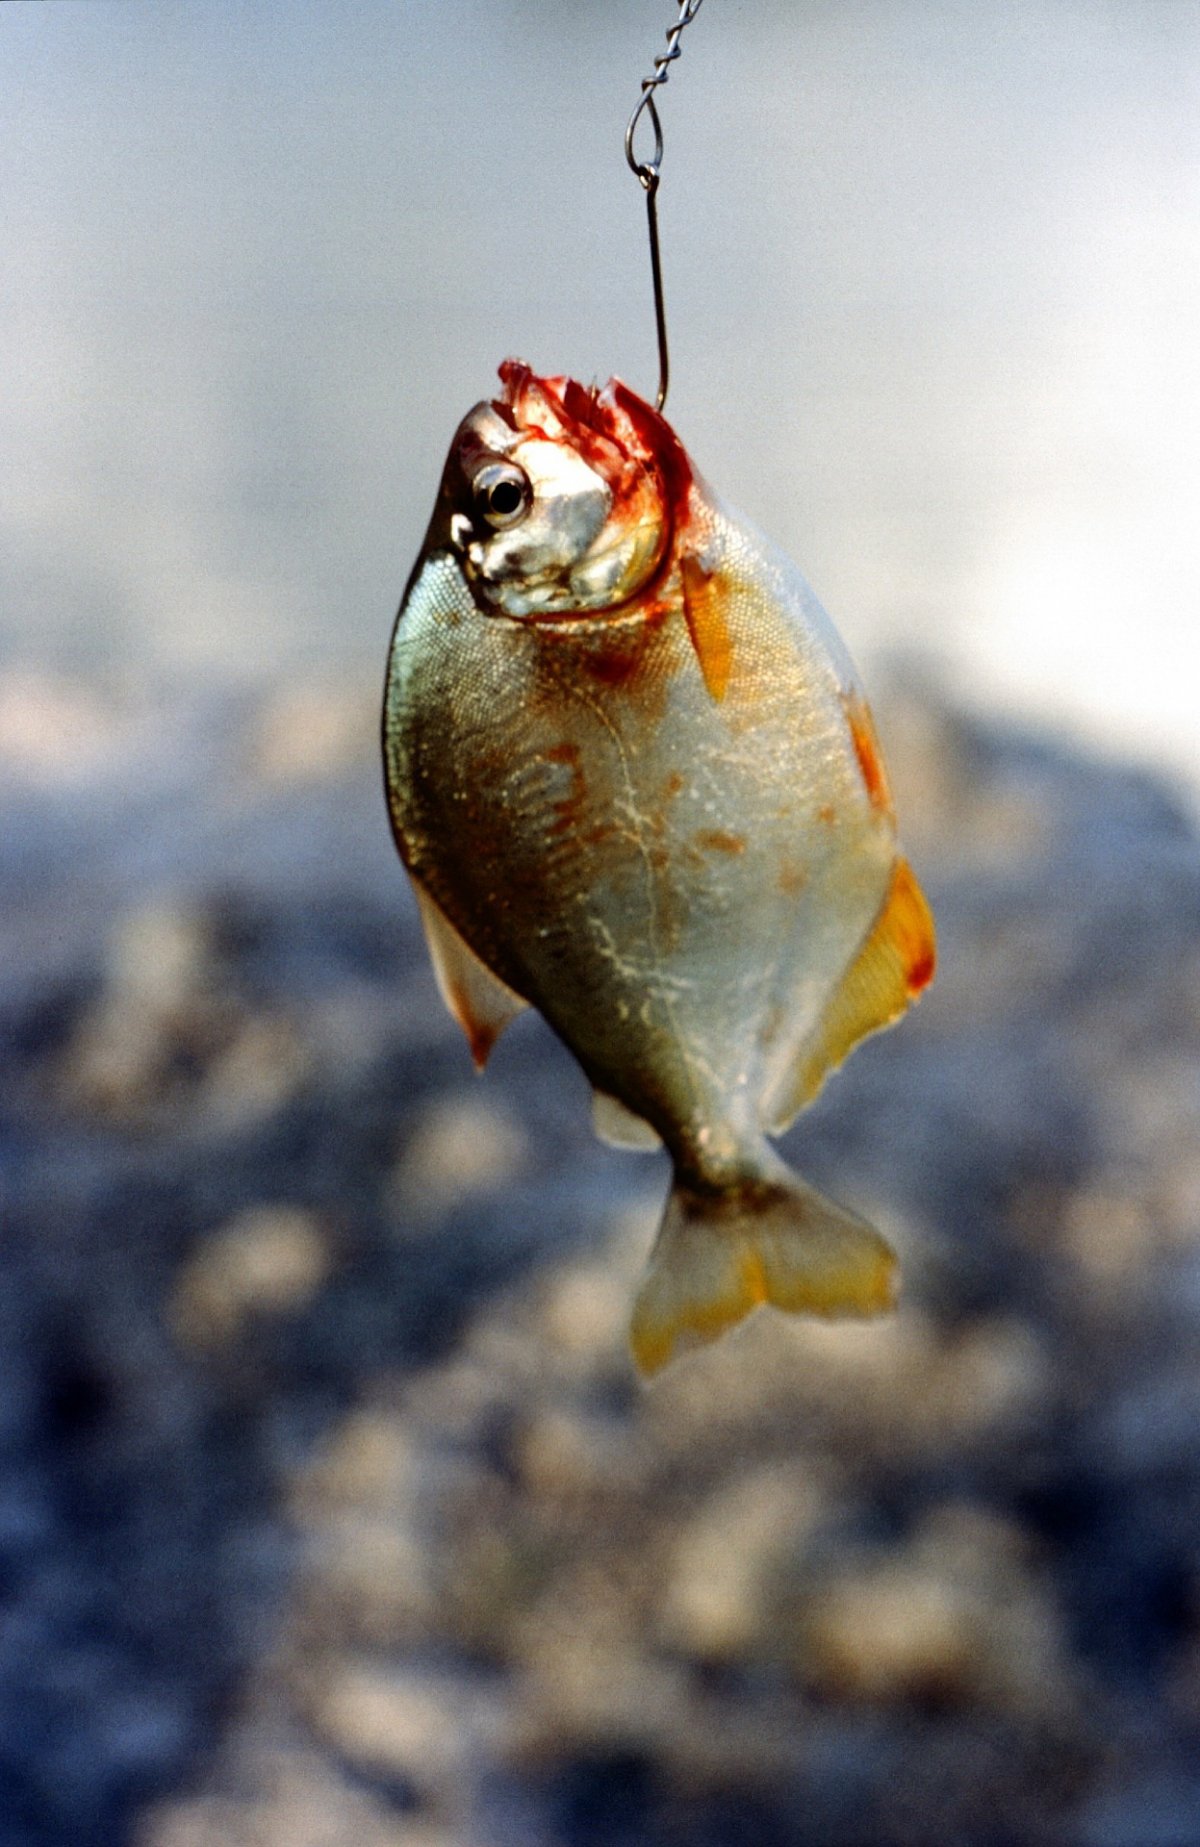 食人鱼的图片 啃噬图片